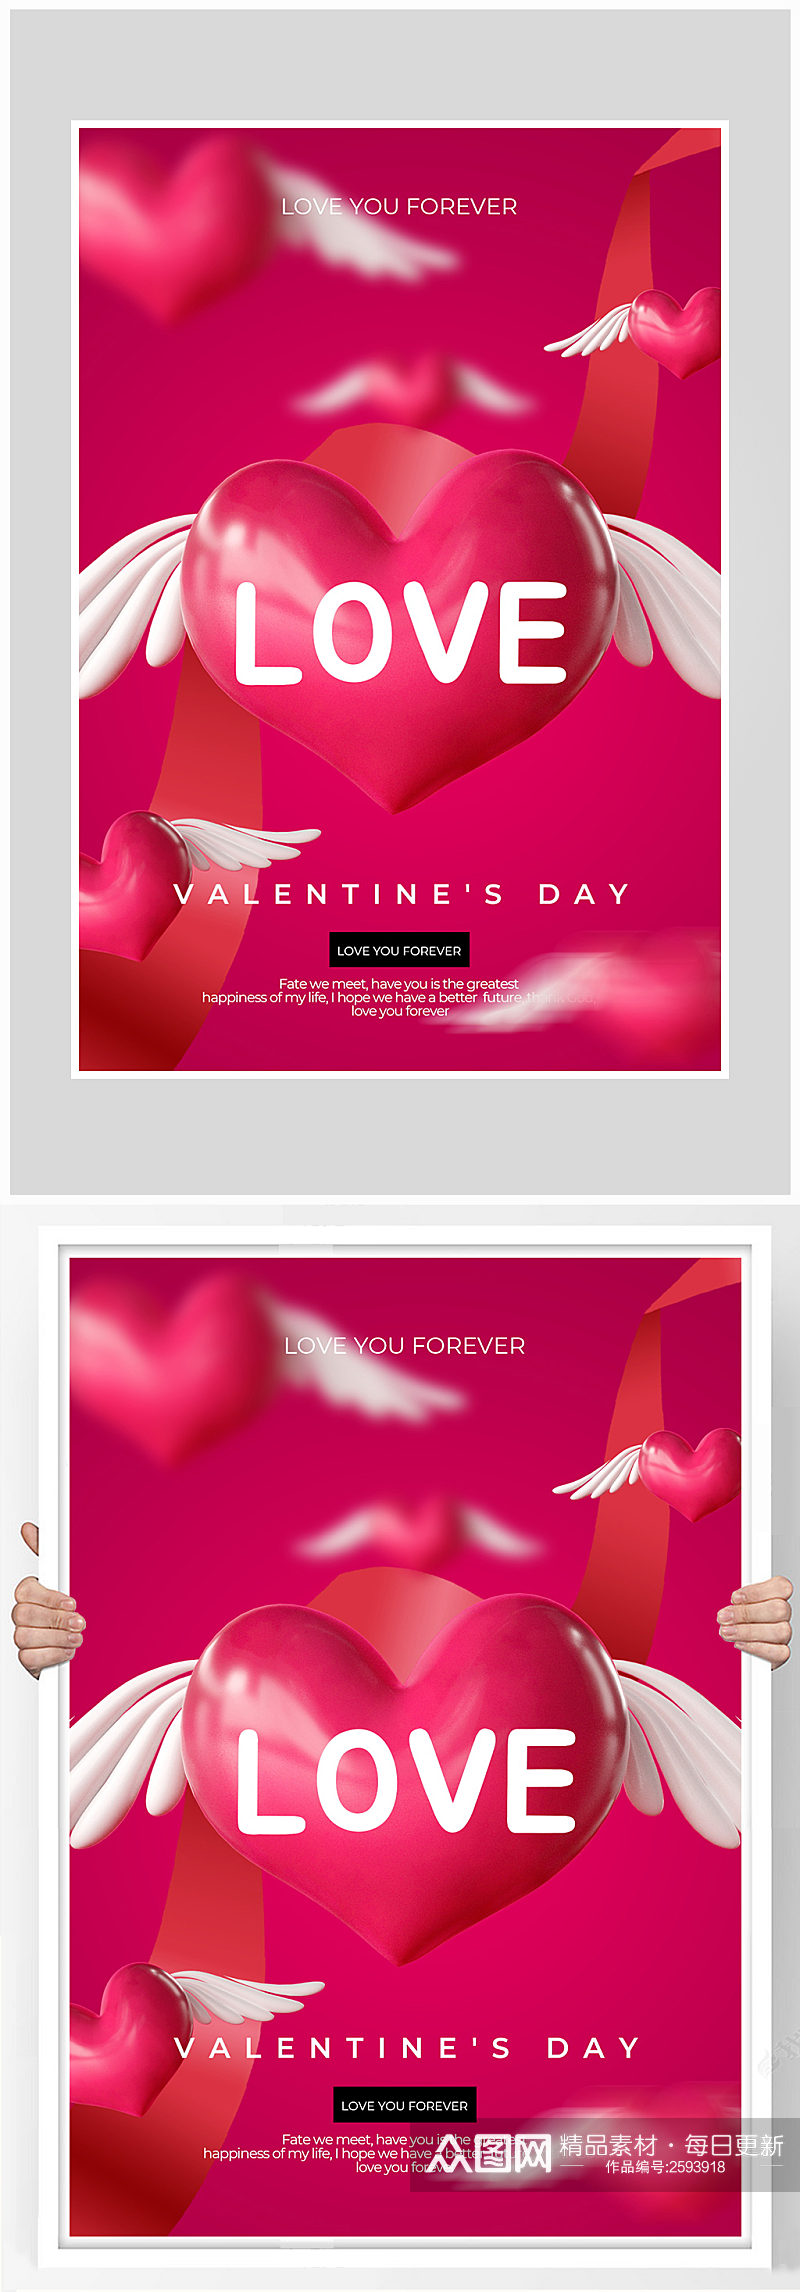 红色质感大气情人节爱情海报设计素材